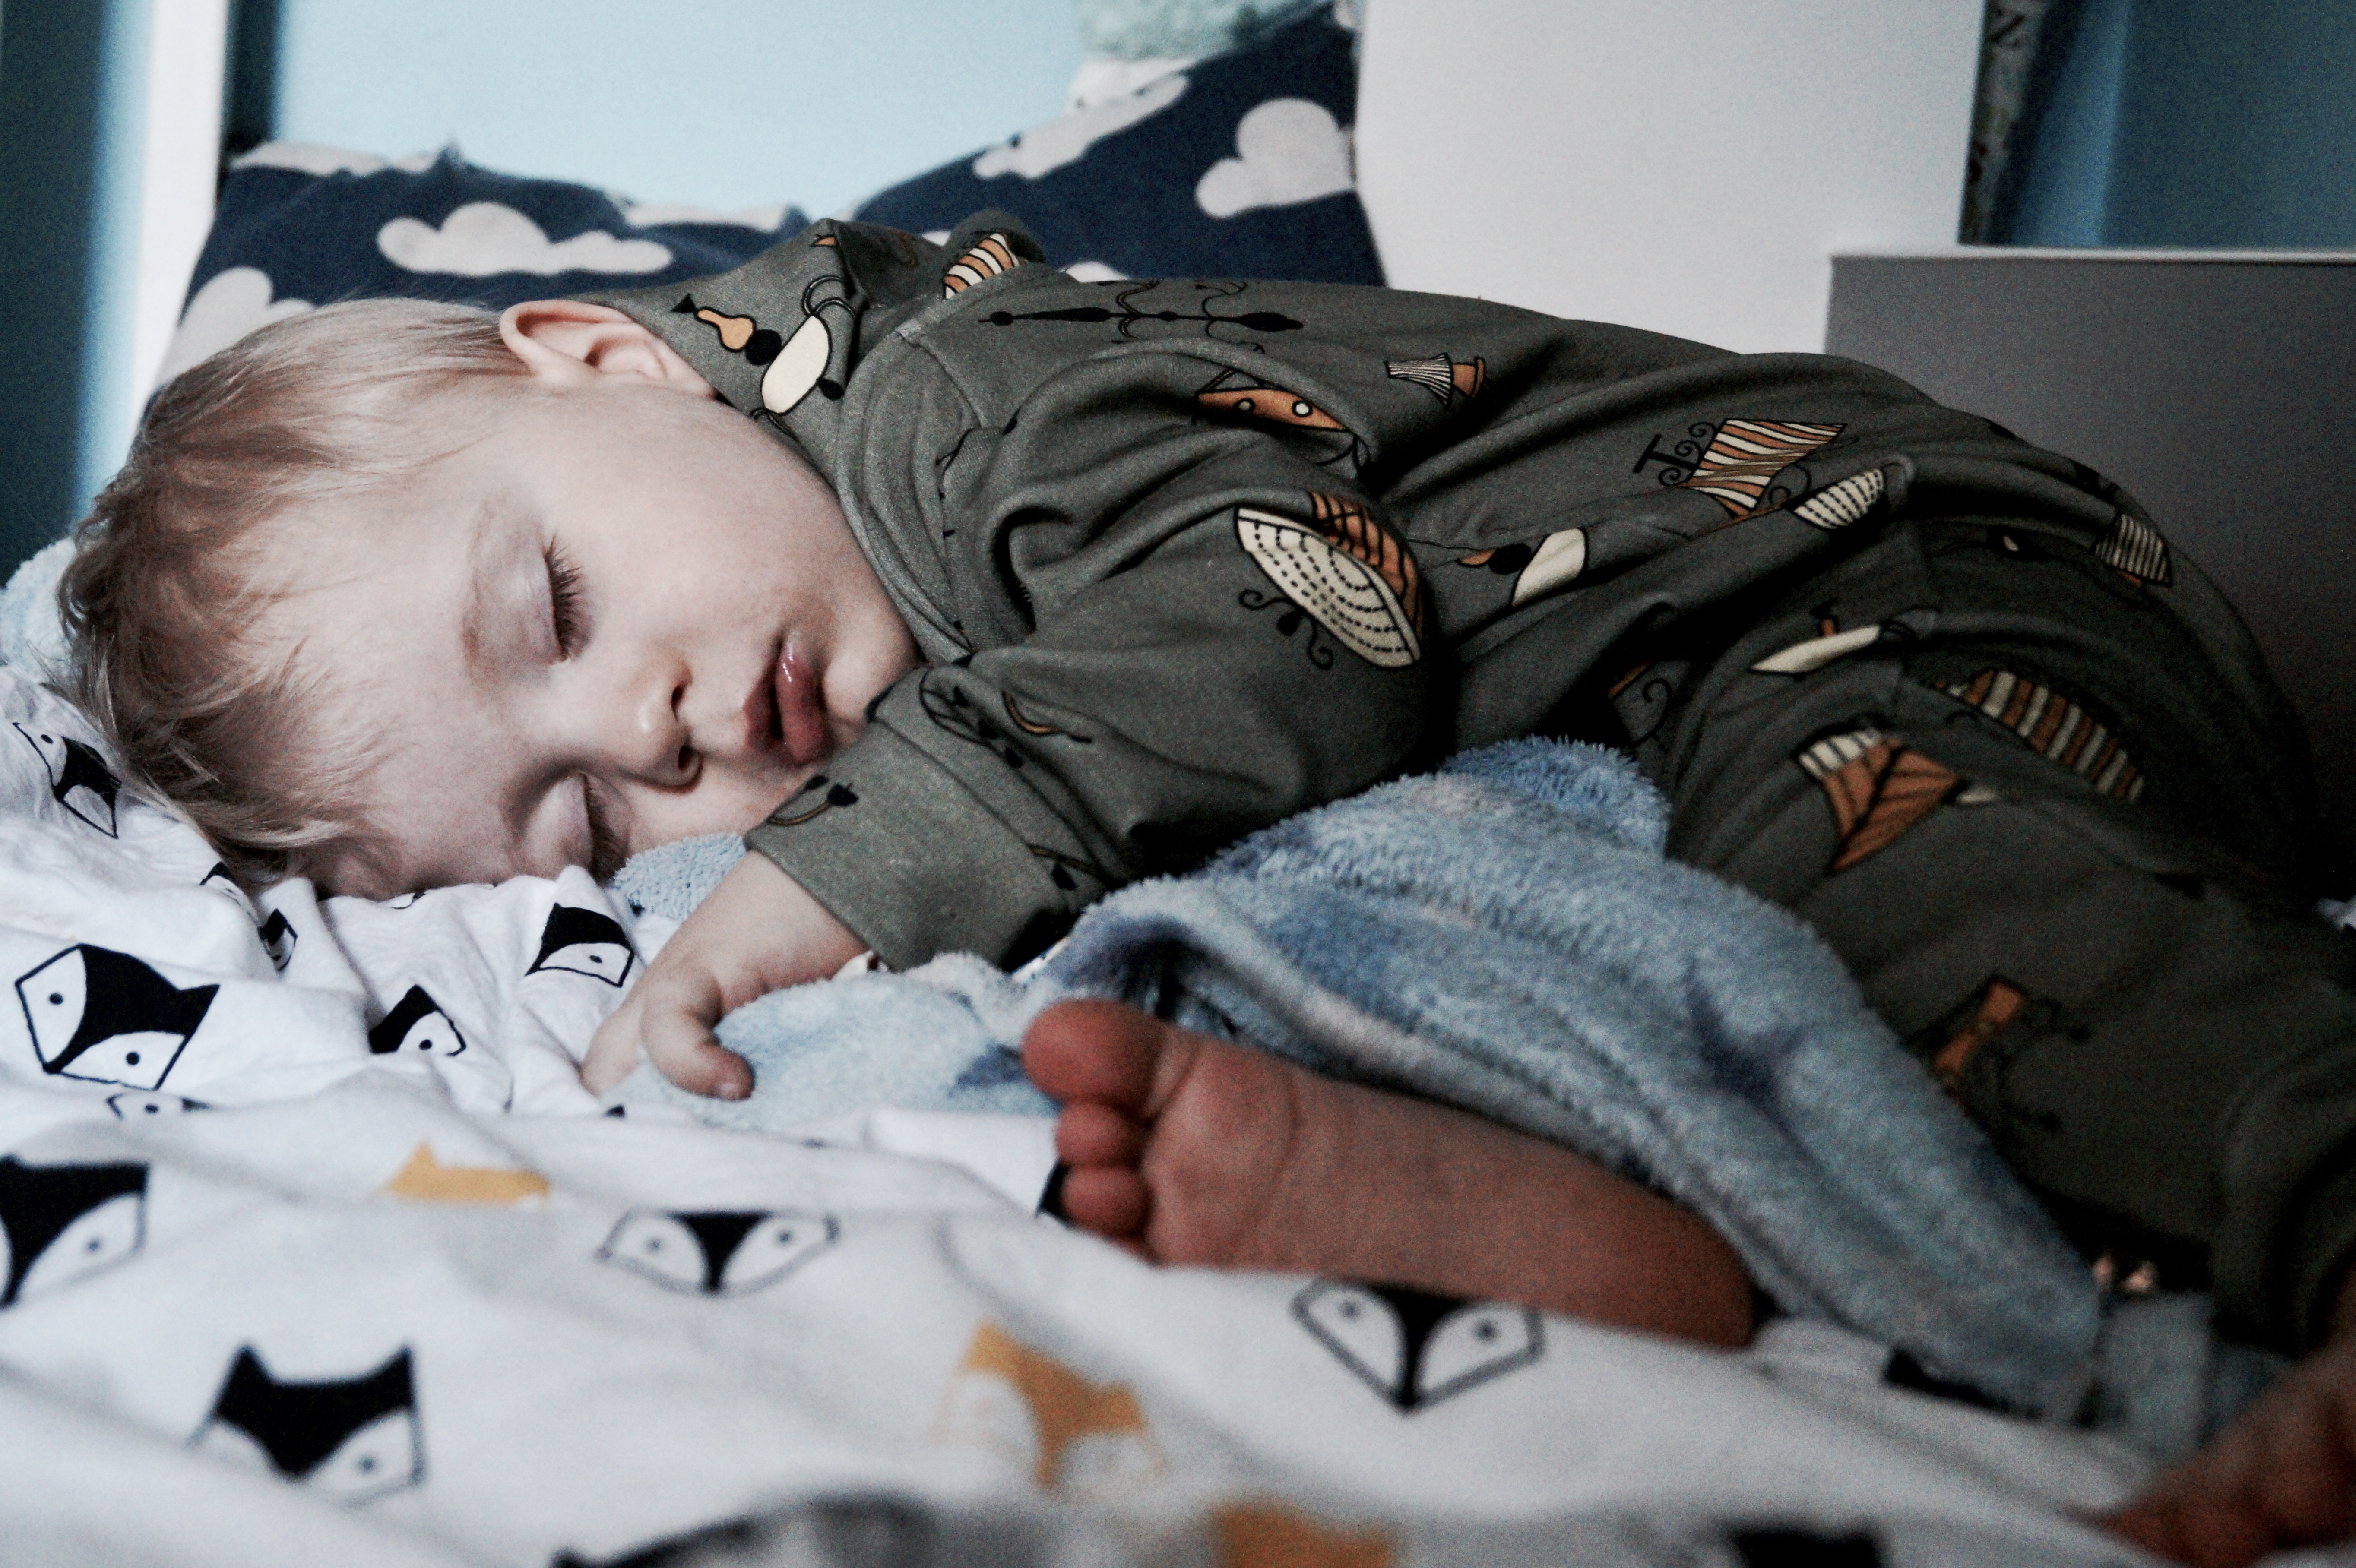 Nauka samodzielnego zasypiania – czyli jak robimy to całkowicie bezstresowo i w zgodzie ze sobą i dzieckiem.